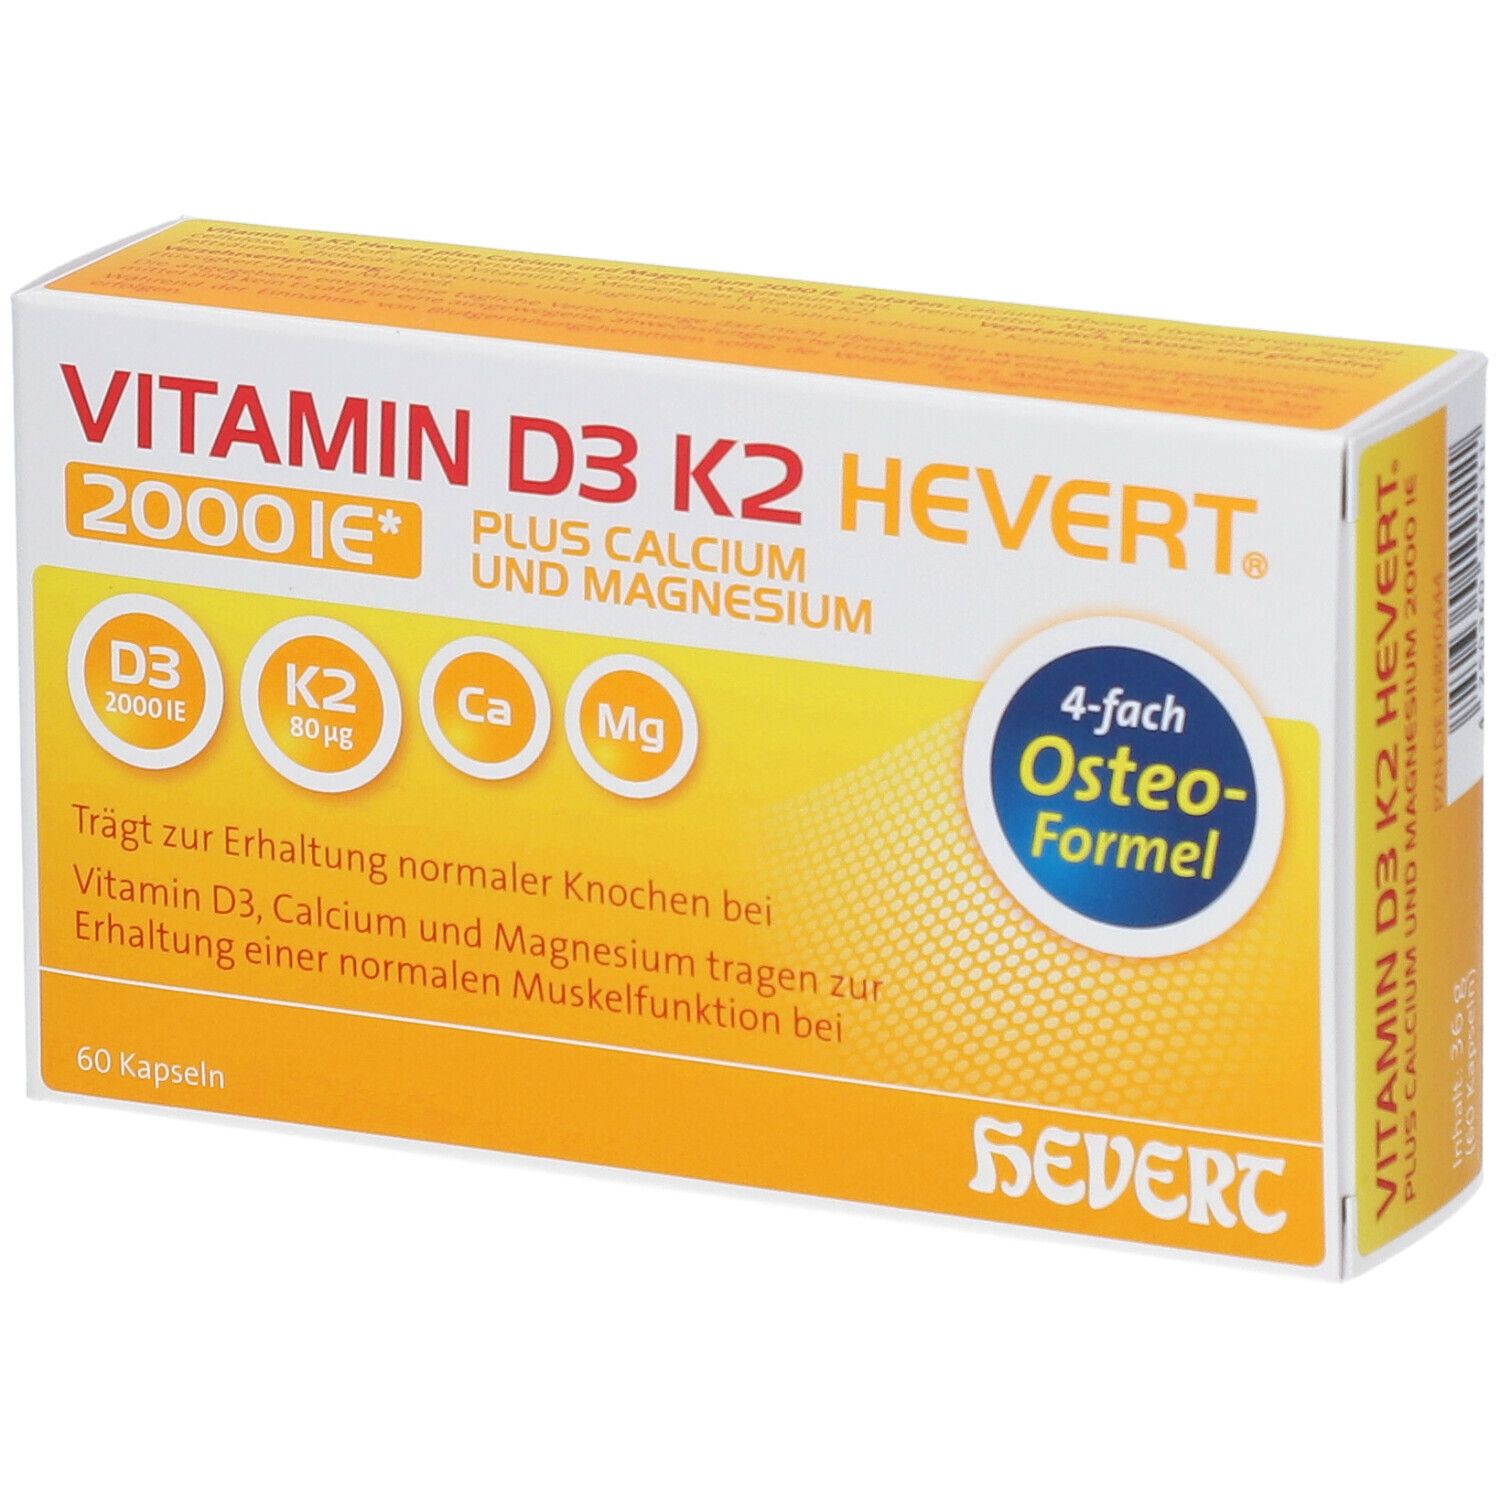 Hevert Arzneimittel GmbH & Co. KG Vitamin D3 K2 Hevert® Plus Calcium UND Magnesium 2000 I.e.